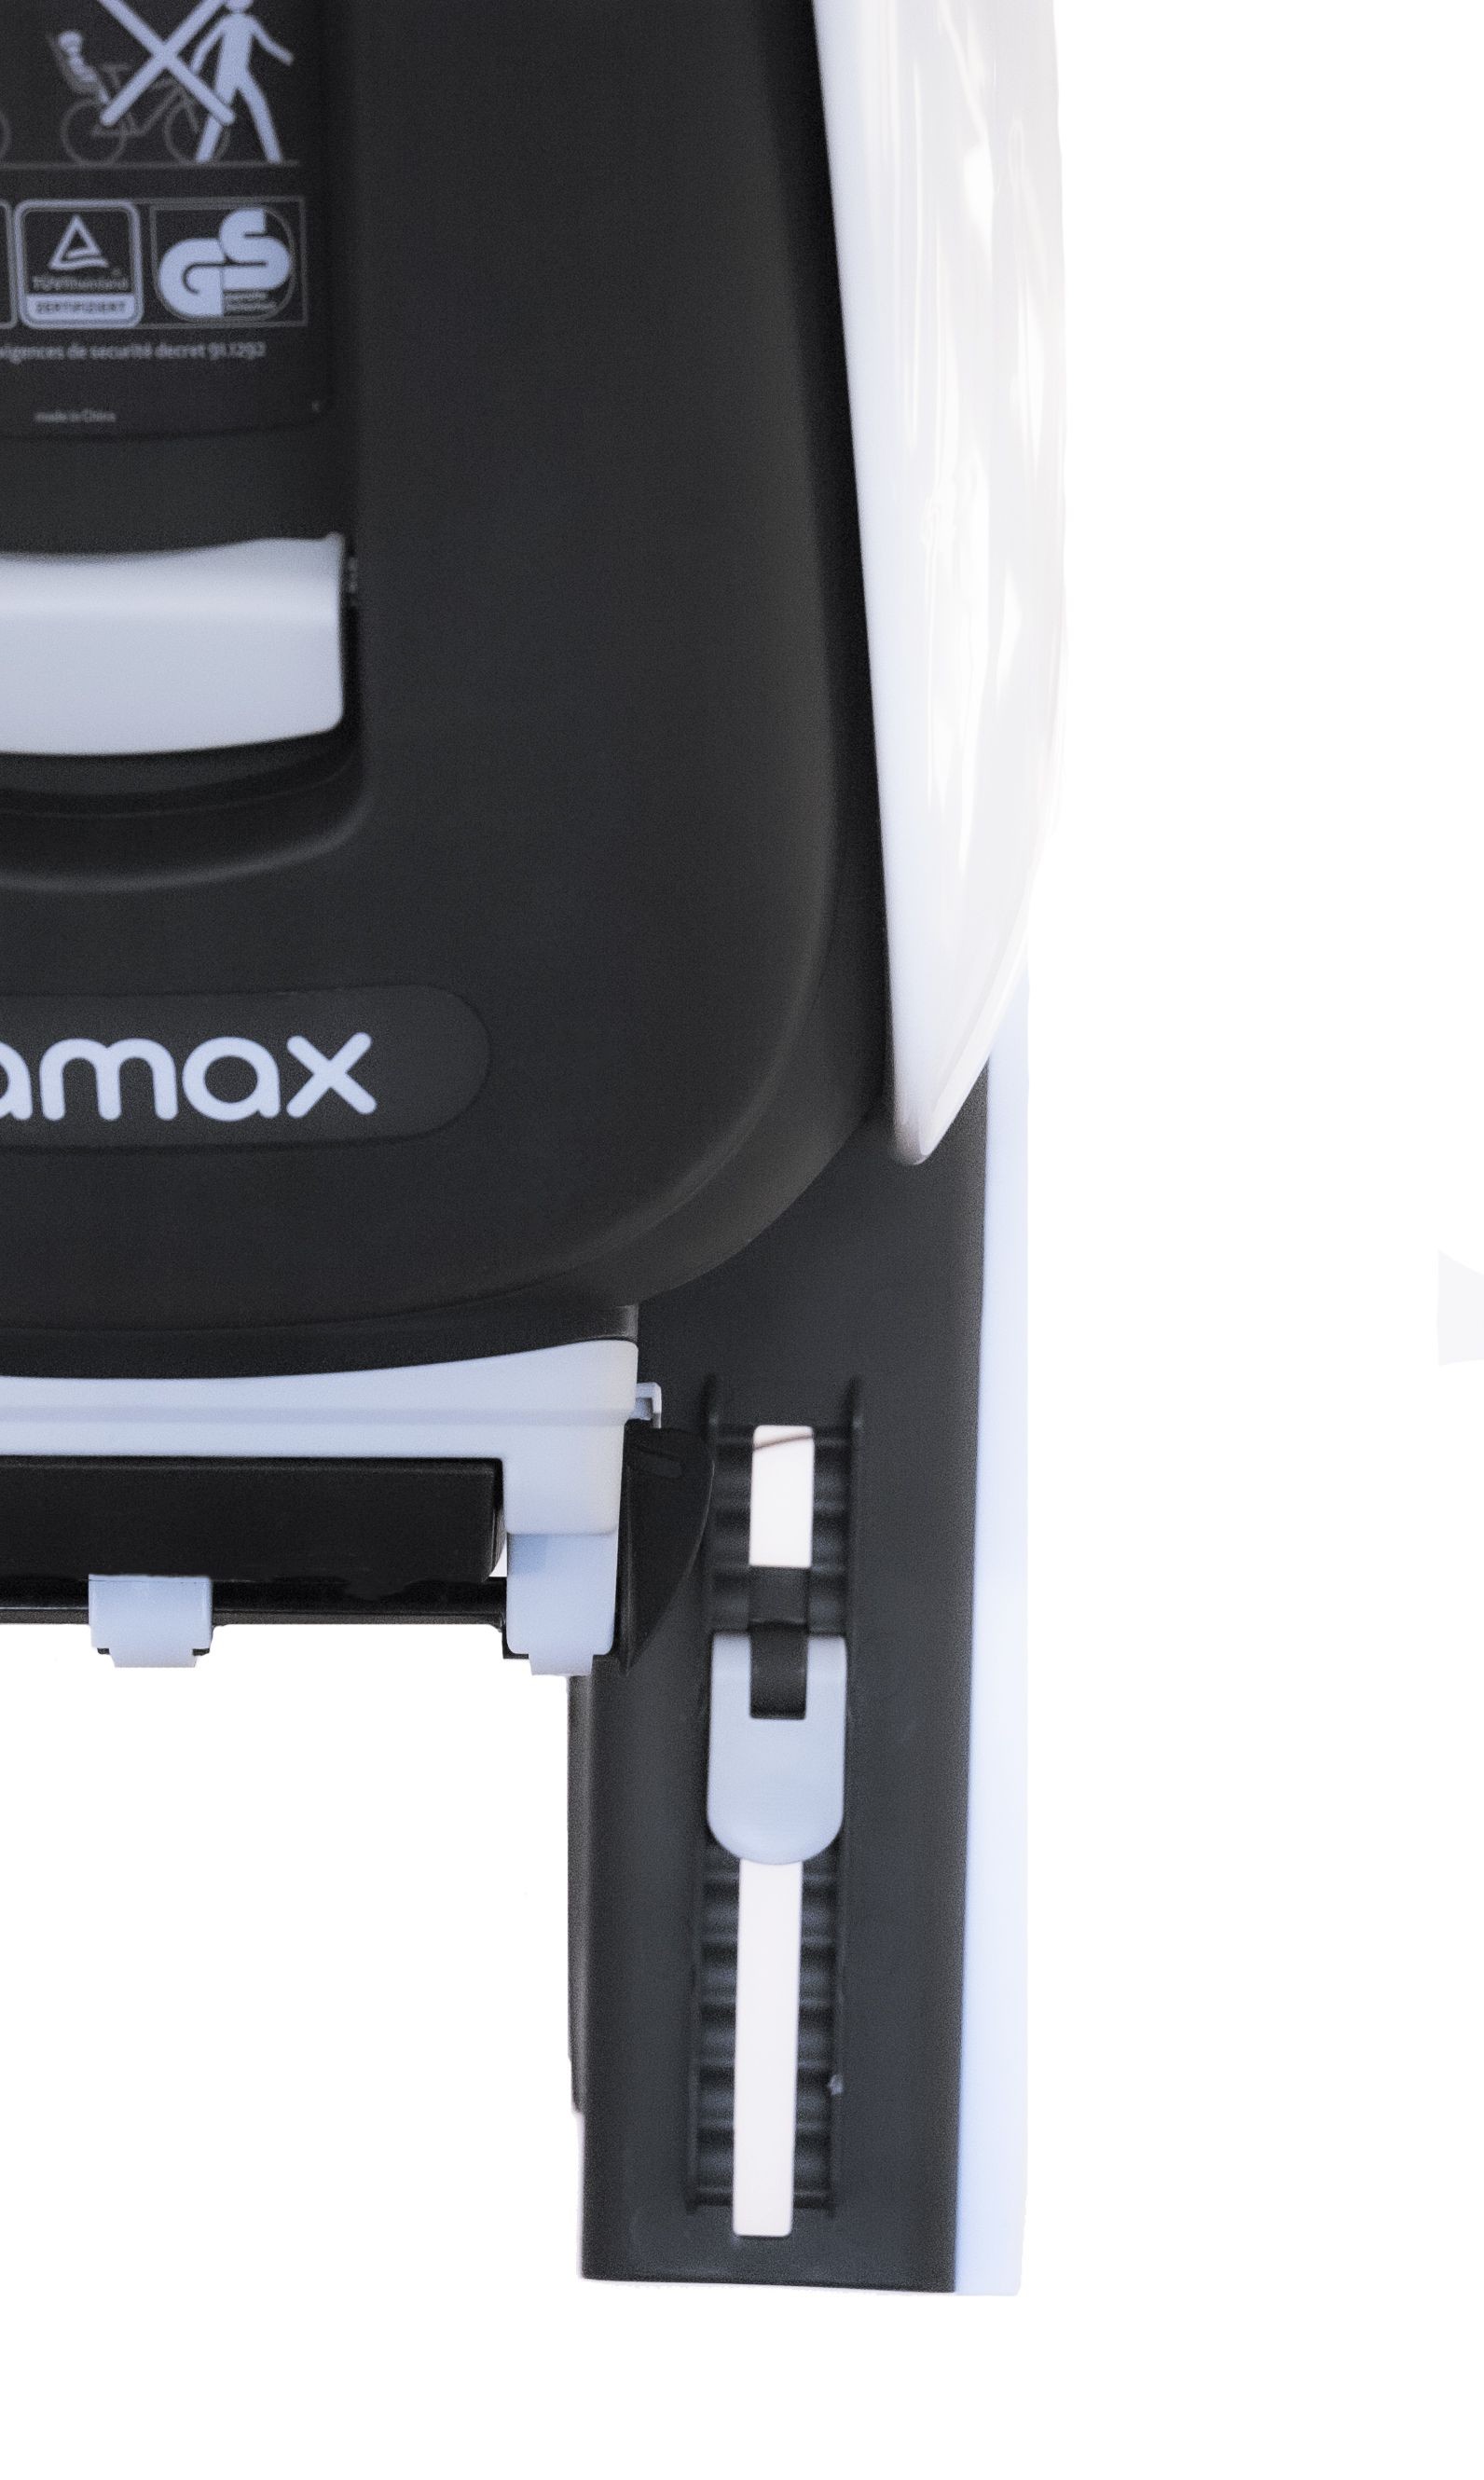 Hamax Caress + Carrier Adapter (gris-blanc+noir | grijs-wit+zwart)